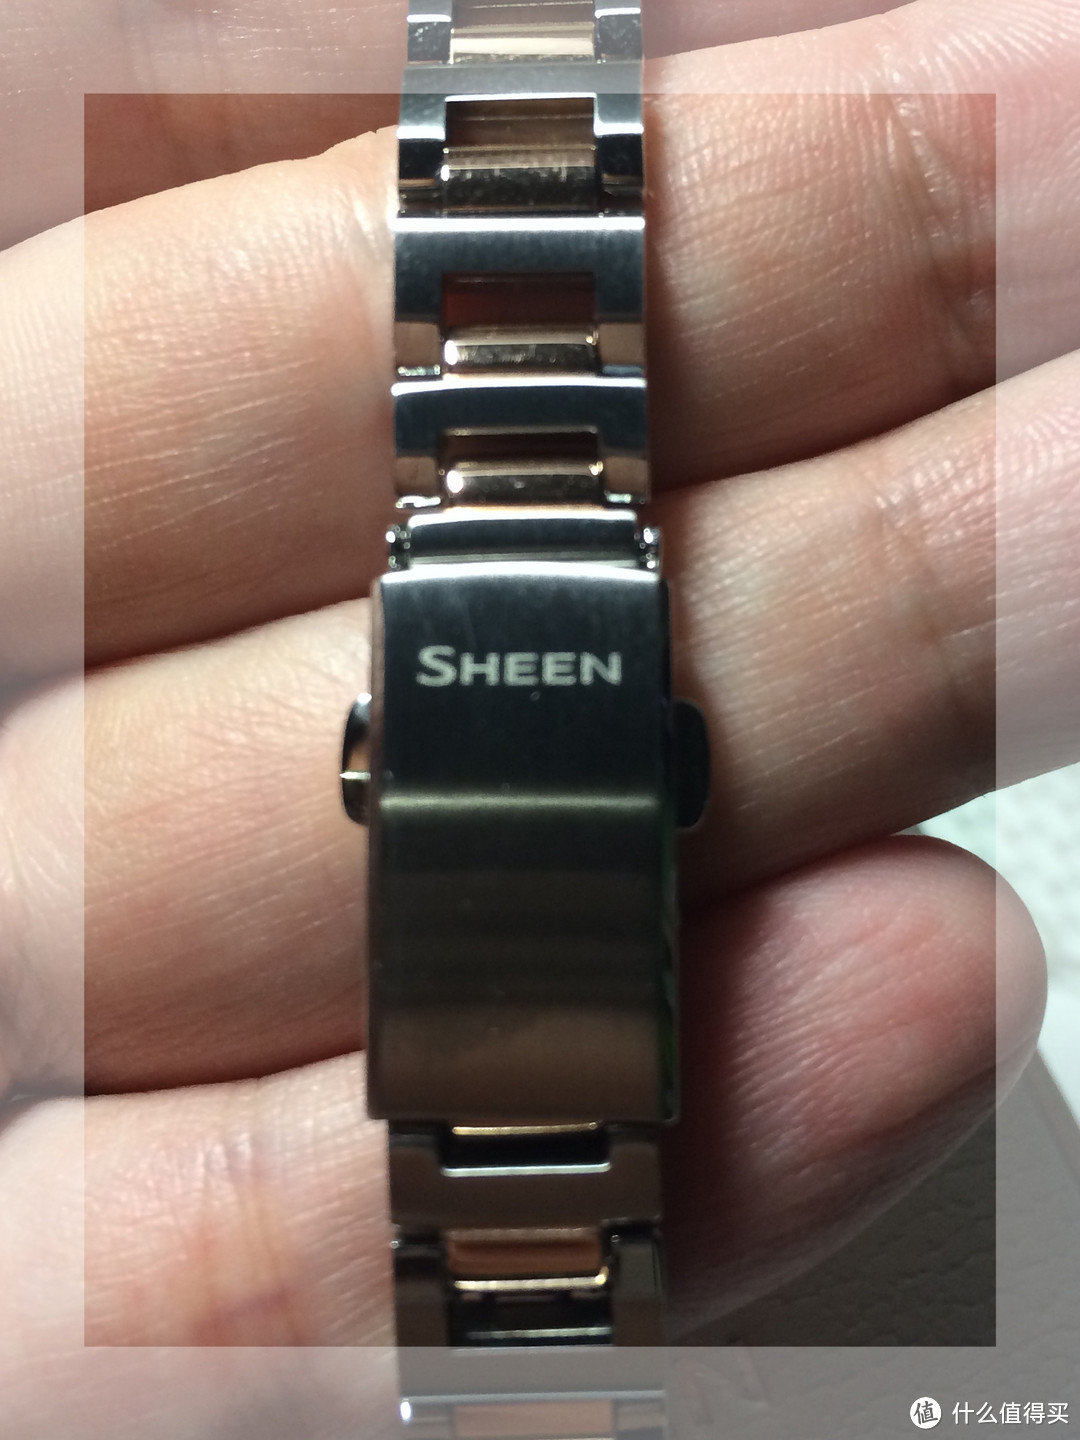 背面表扣上也是sheen的标记 尽量淡化casio的符号